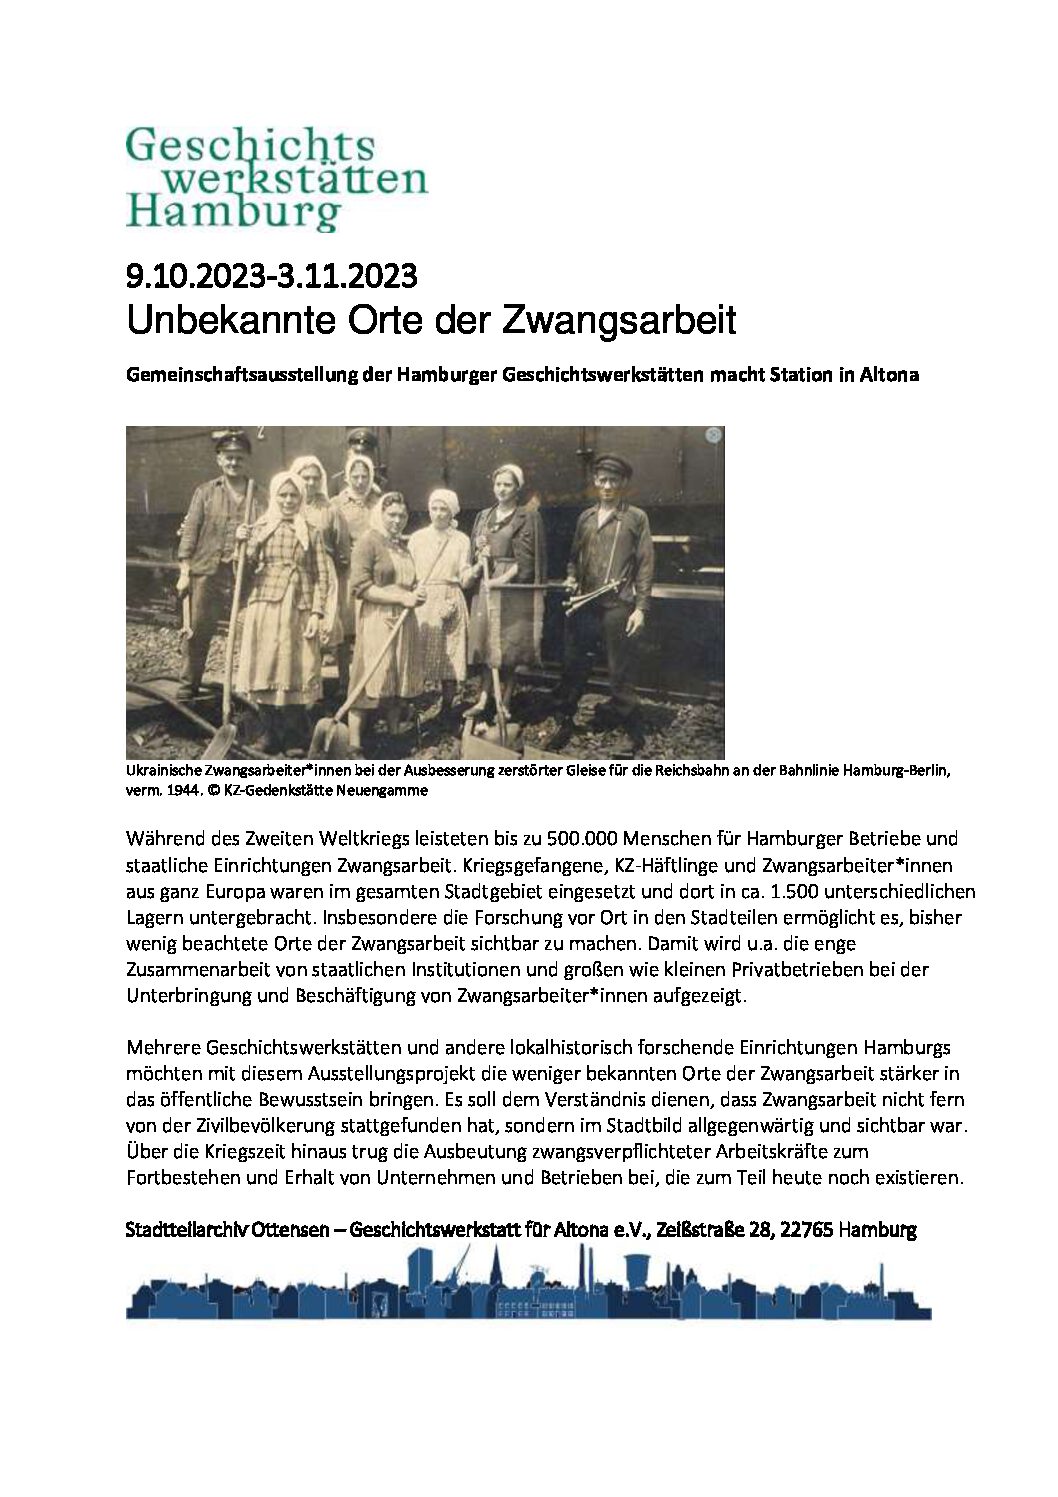 Ausstellung in Altona: Orte der Zwangsarbeit in Hamburg